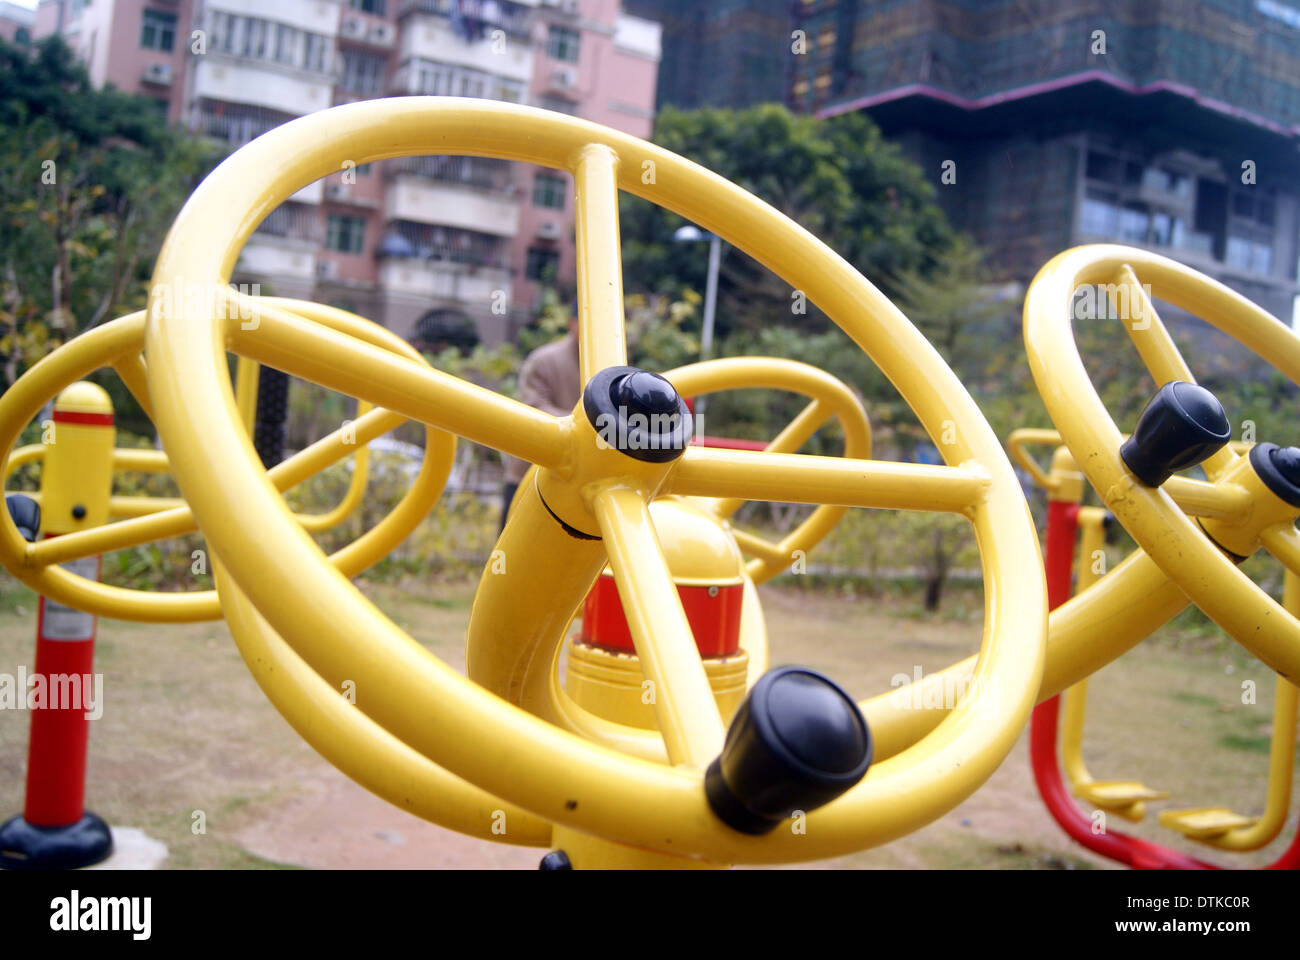 Le attrezzature per il fitness e strutture sportive, in cinese della zona residenziale Foto Stock